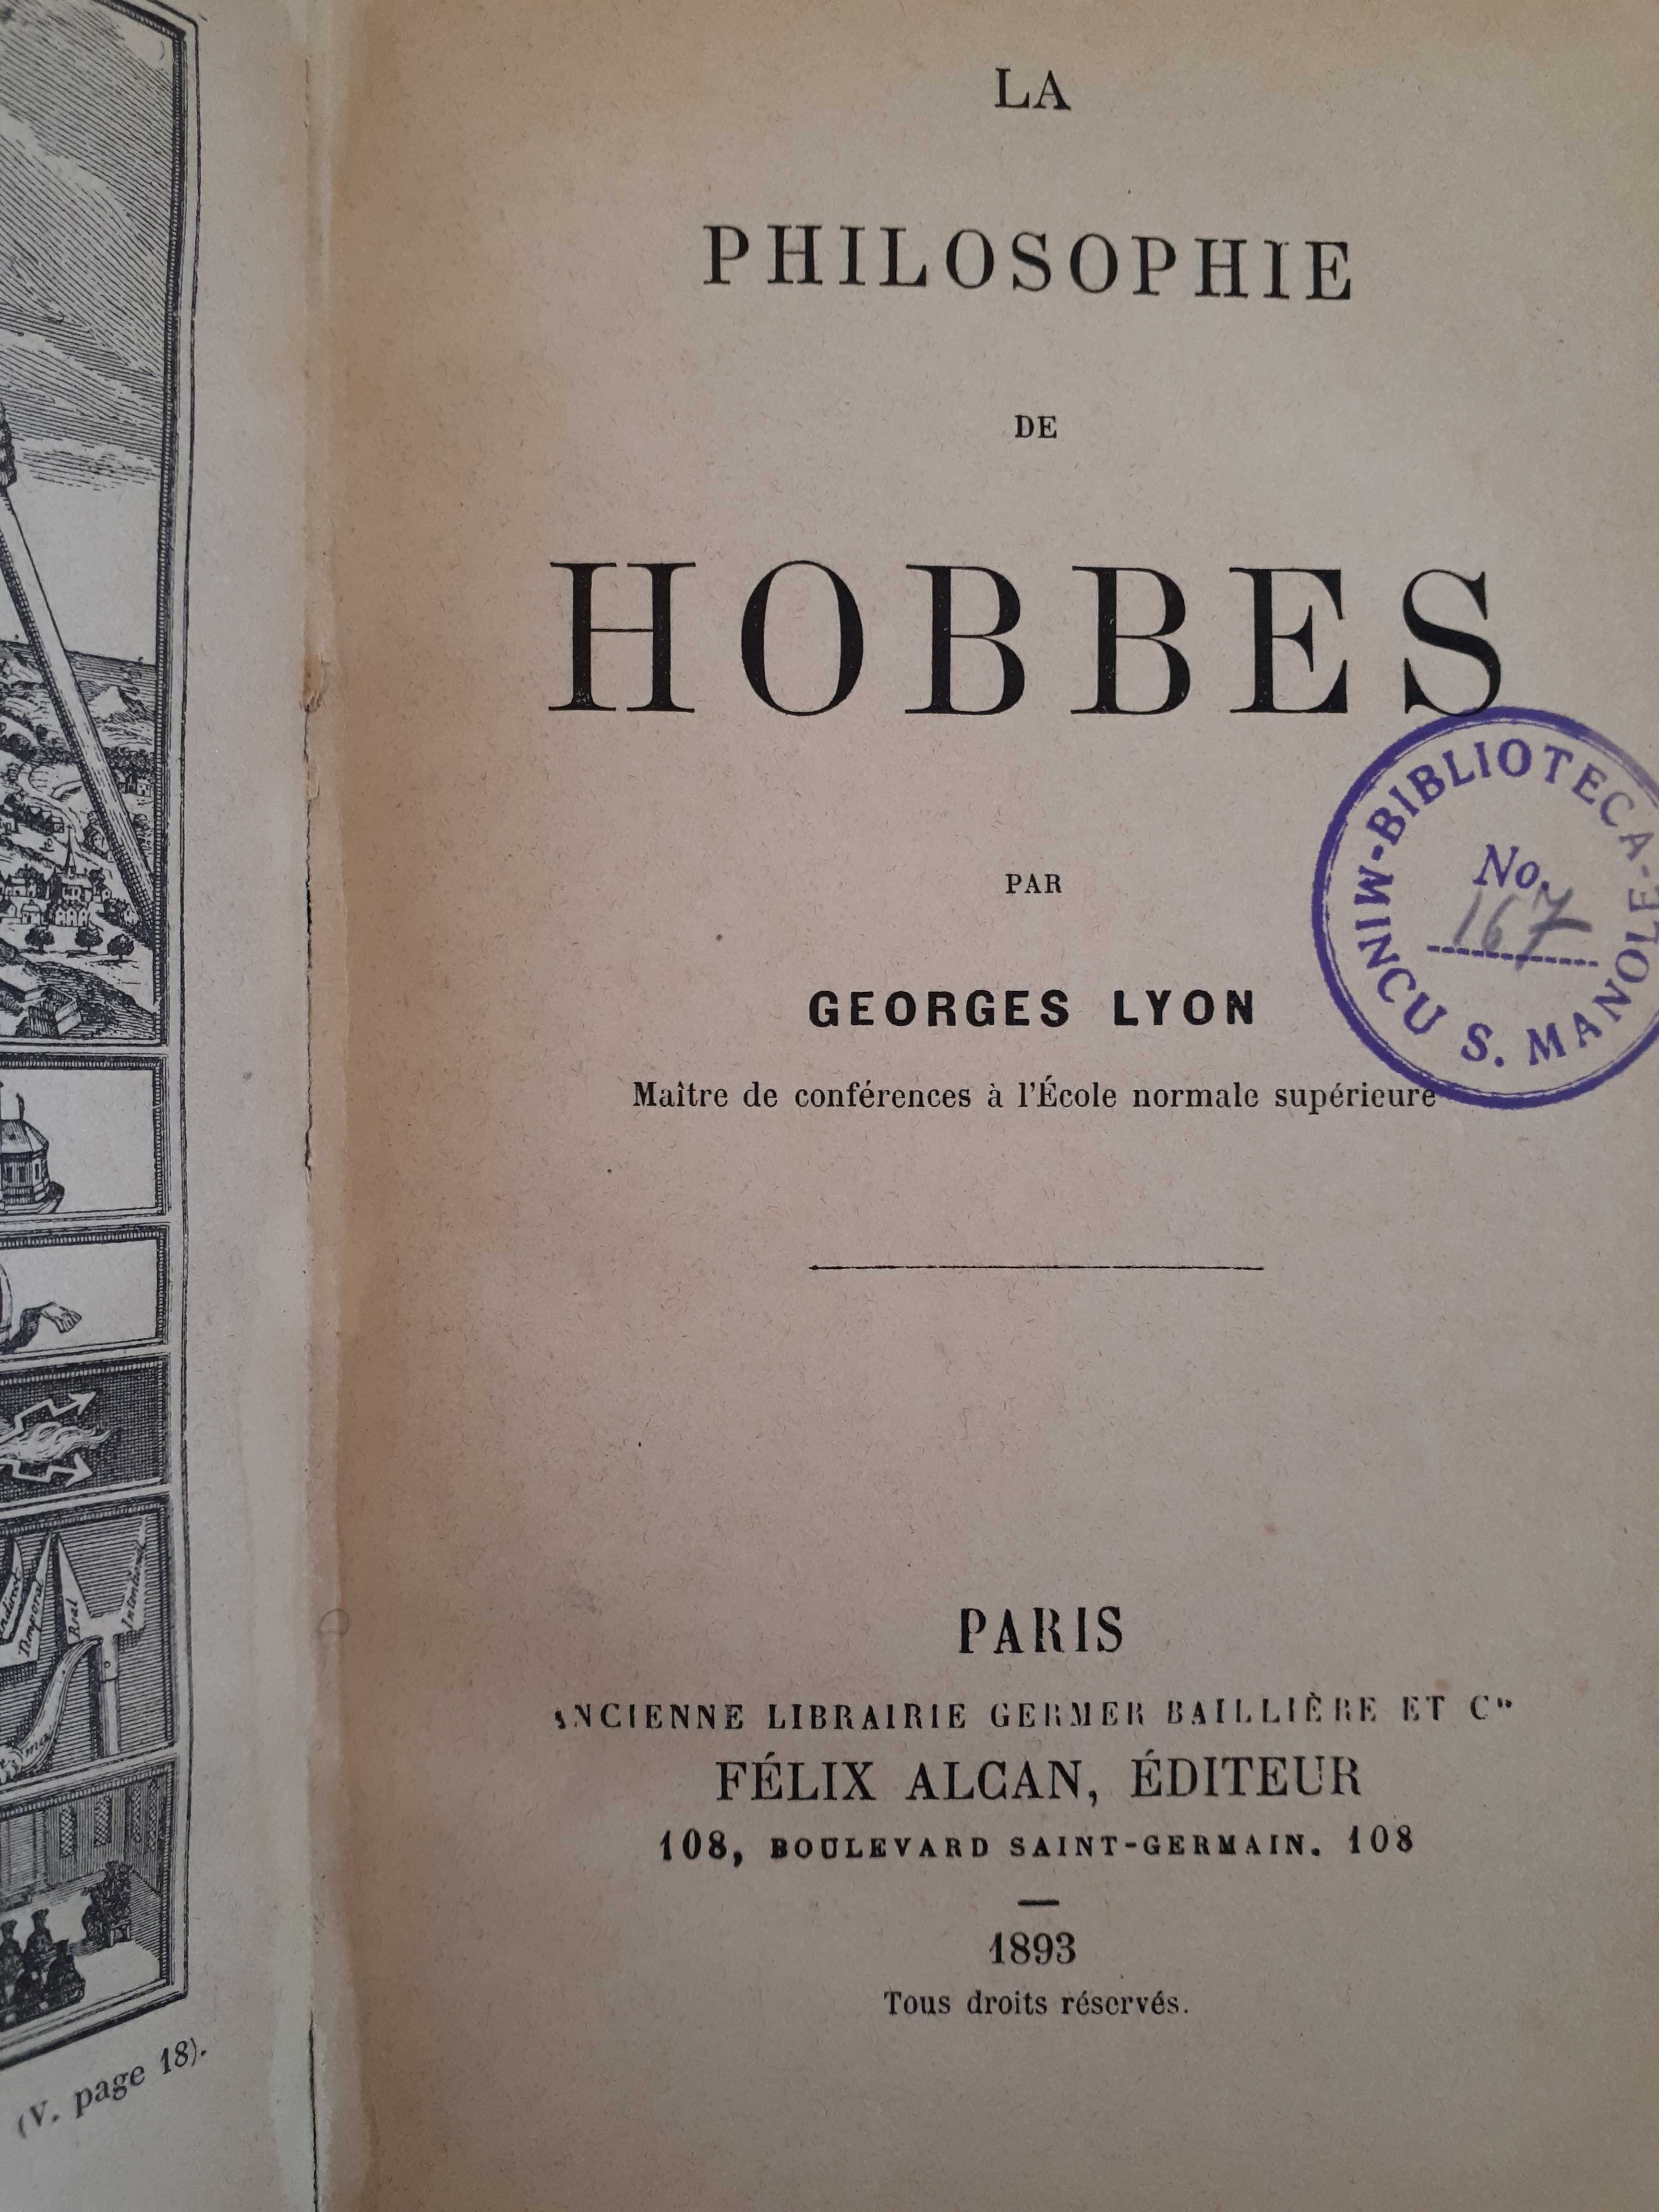 La Philosophie de HOBBES, par Georges Lyon, Paris, 1893